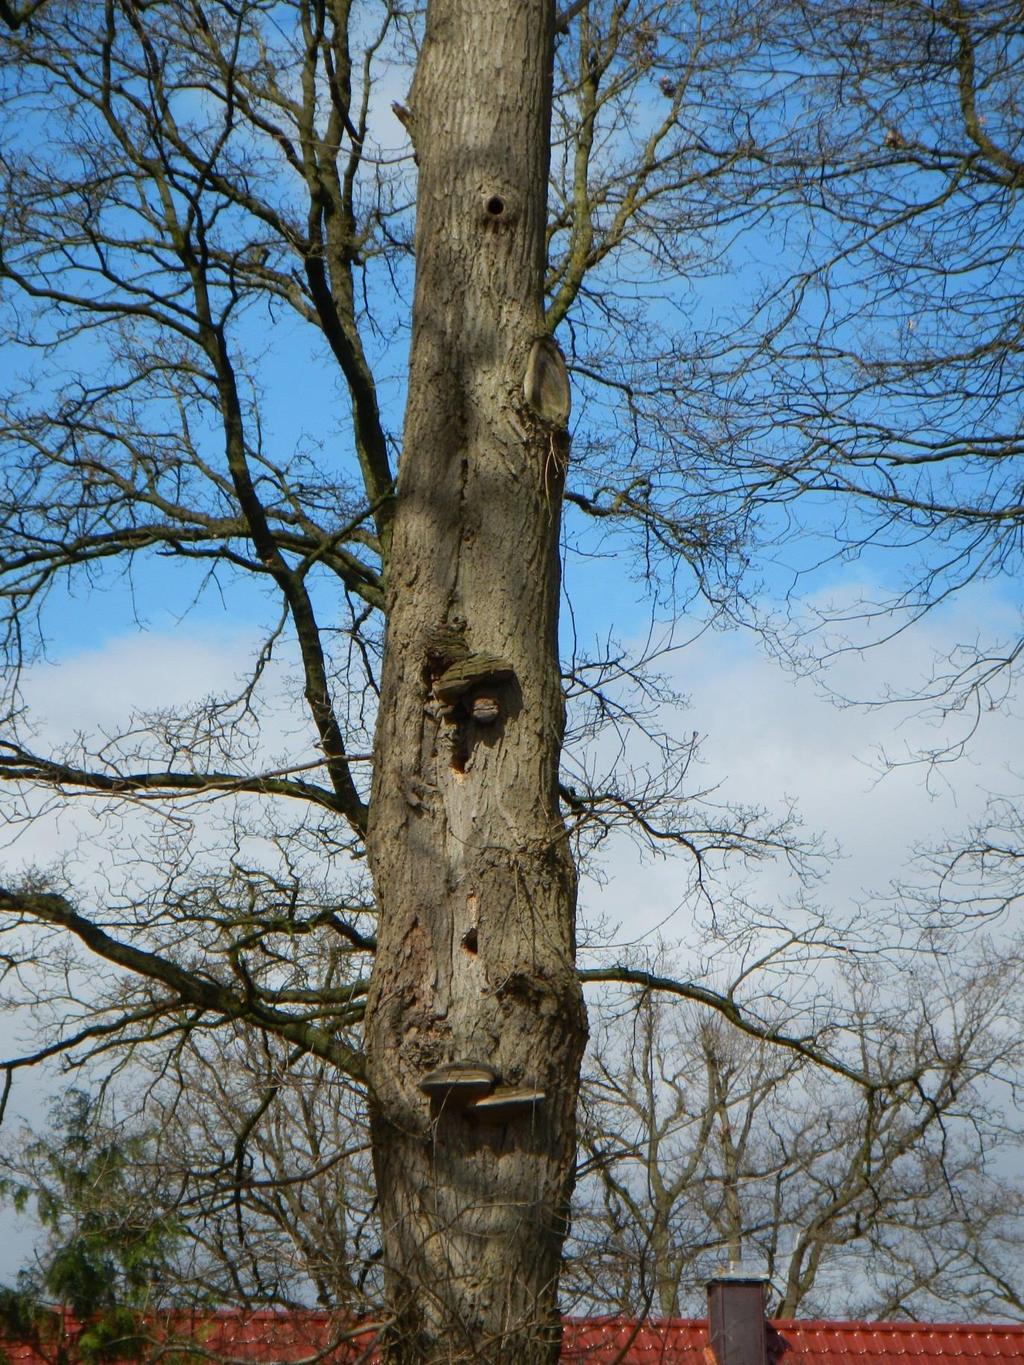 sich um eine Eiche mit etwa 50 cm BHD. Dieser Baum ist von einem parasitischen Baumpilz befallen, wodurch das Holz weicher und somit für Spechte zugänglicher wird. Abb.